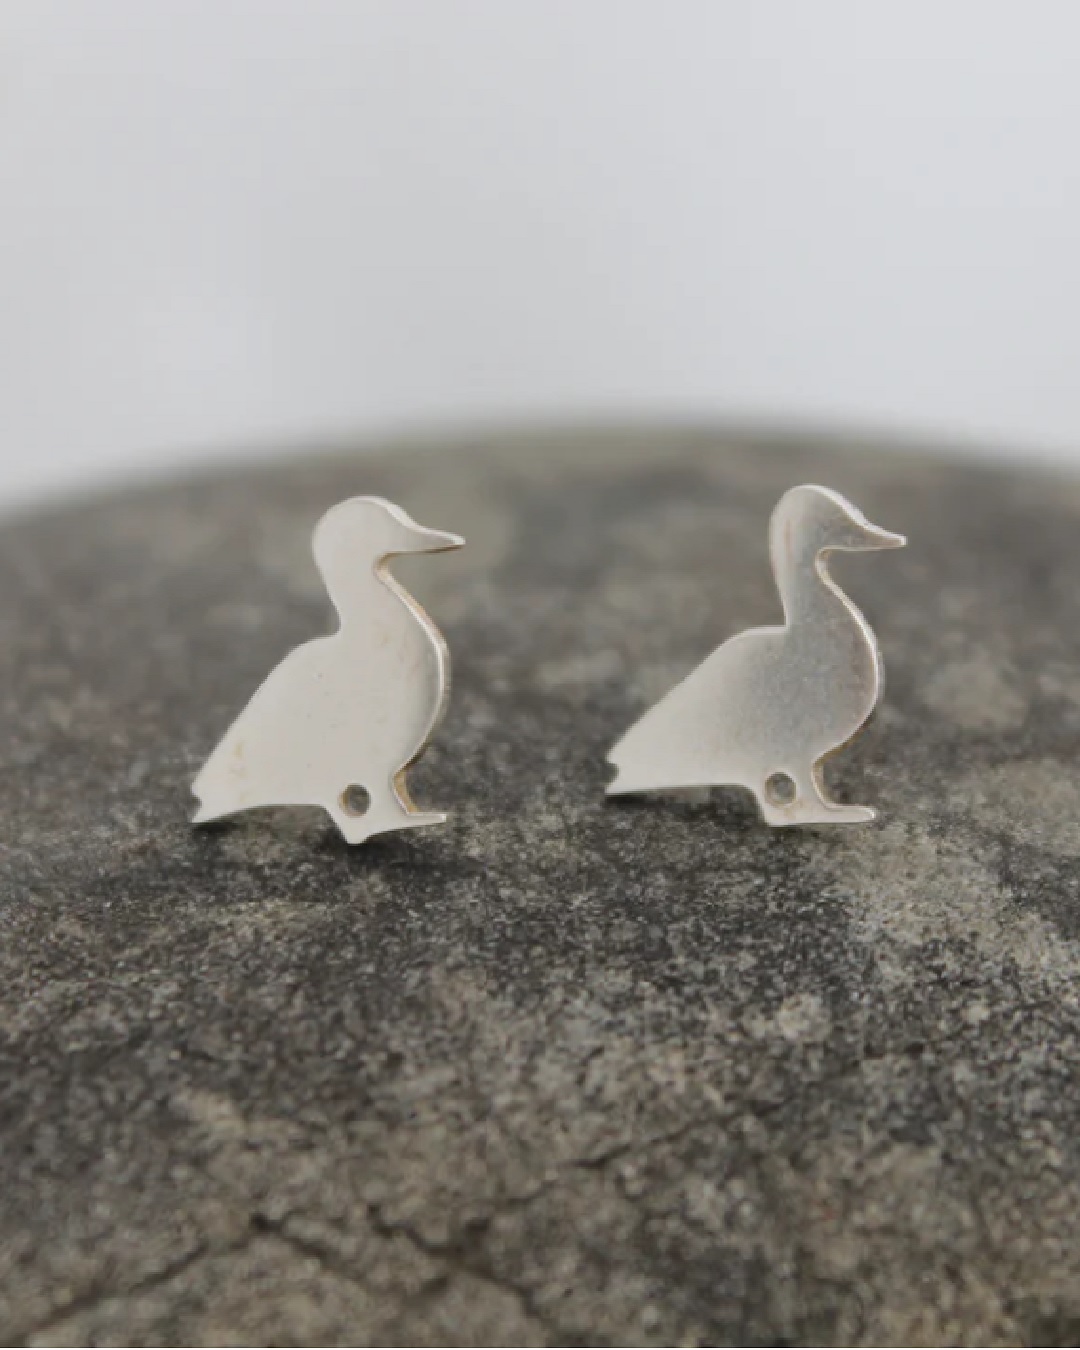 Silver duck earrings on a rock